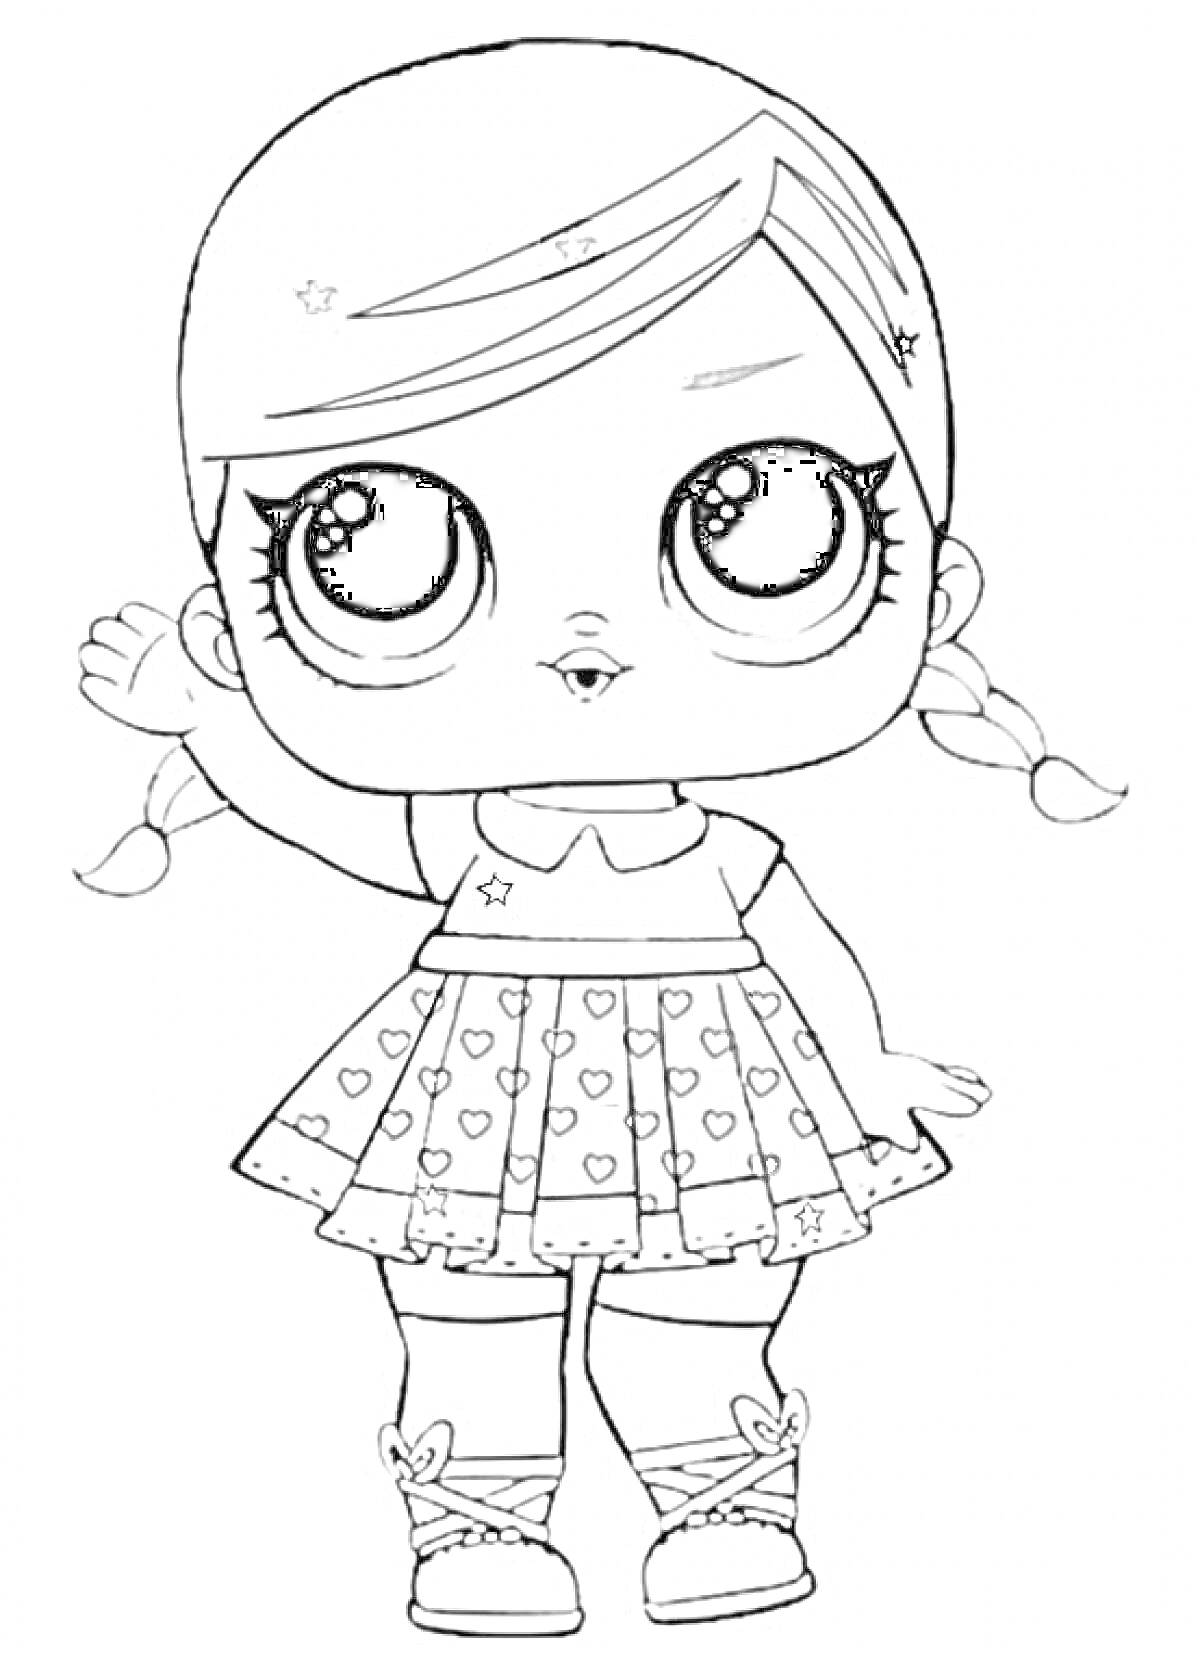 Раскраска Кукла Лол с косичками в платье с сердечками и ботинках с бабочками, поднимающая одну руку